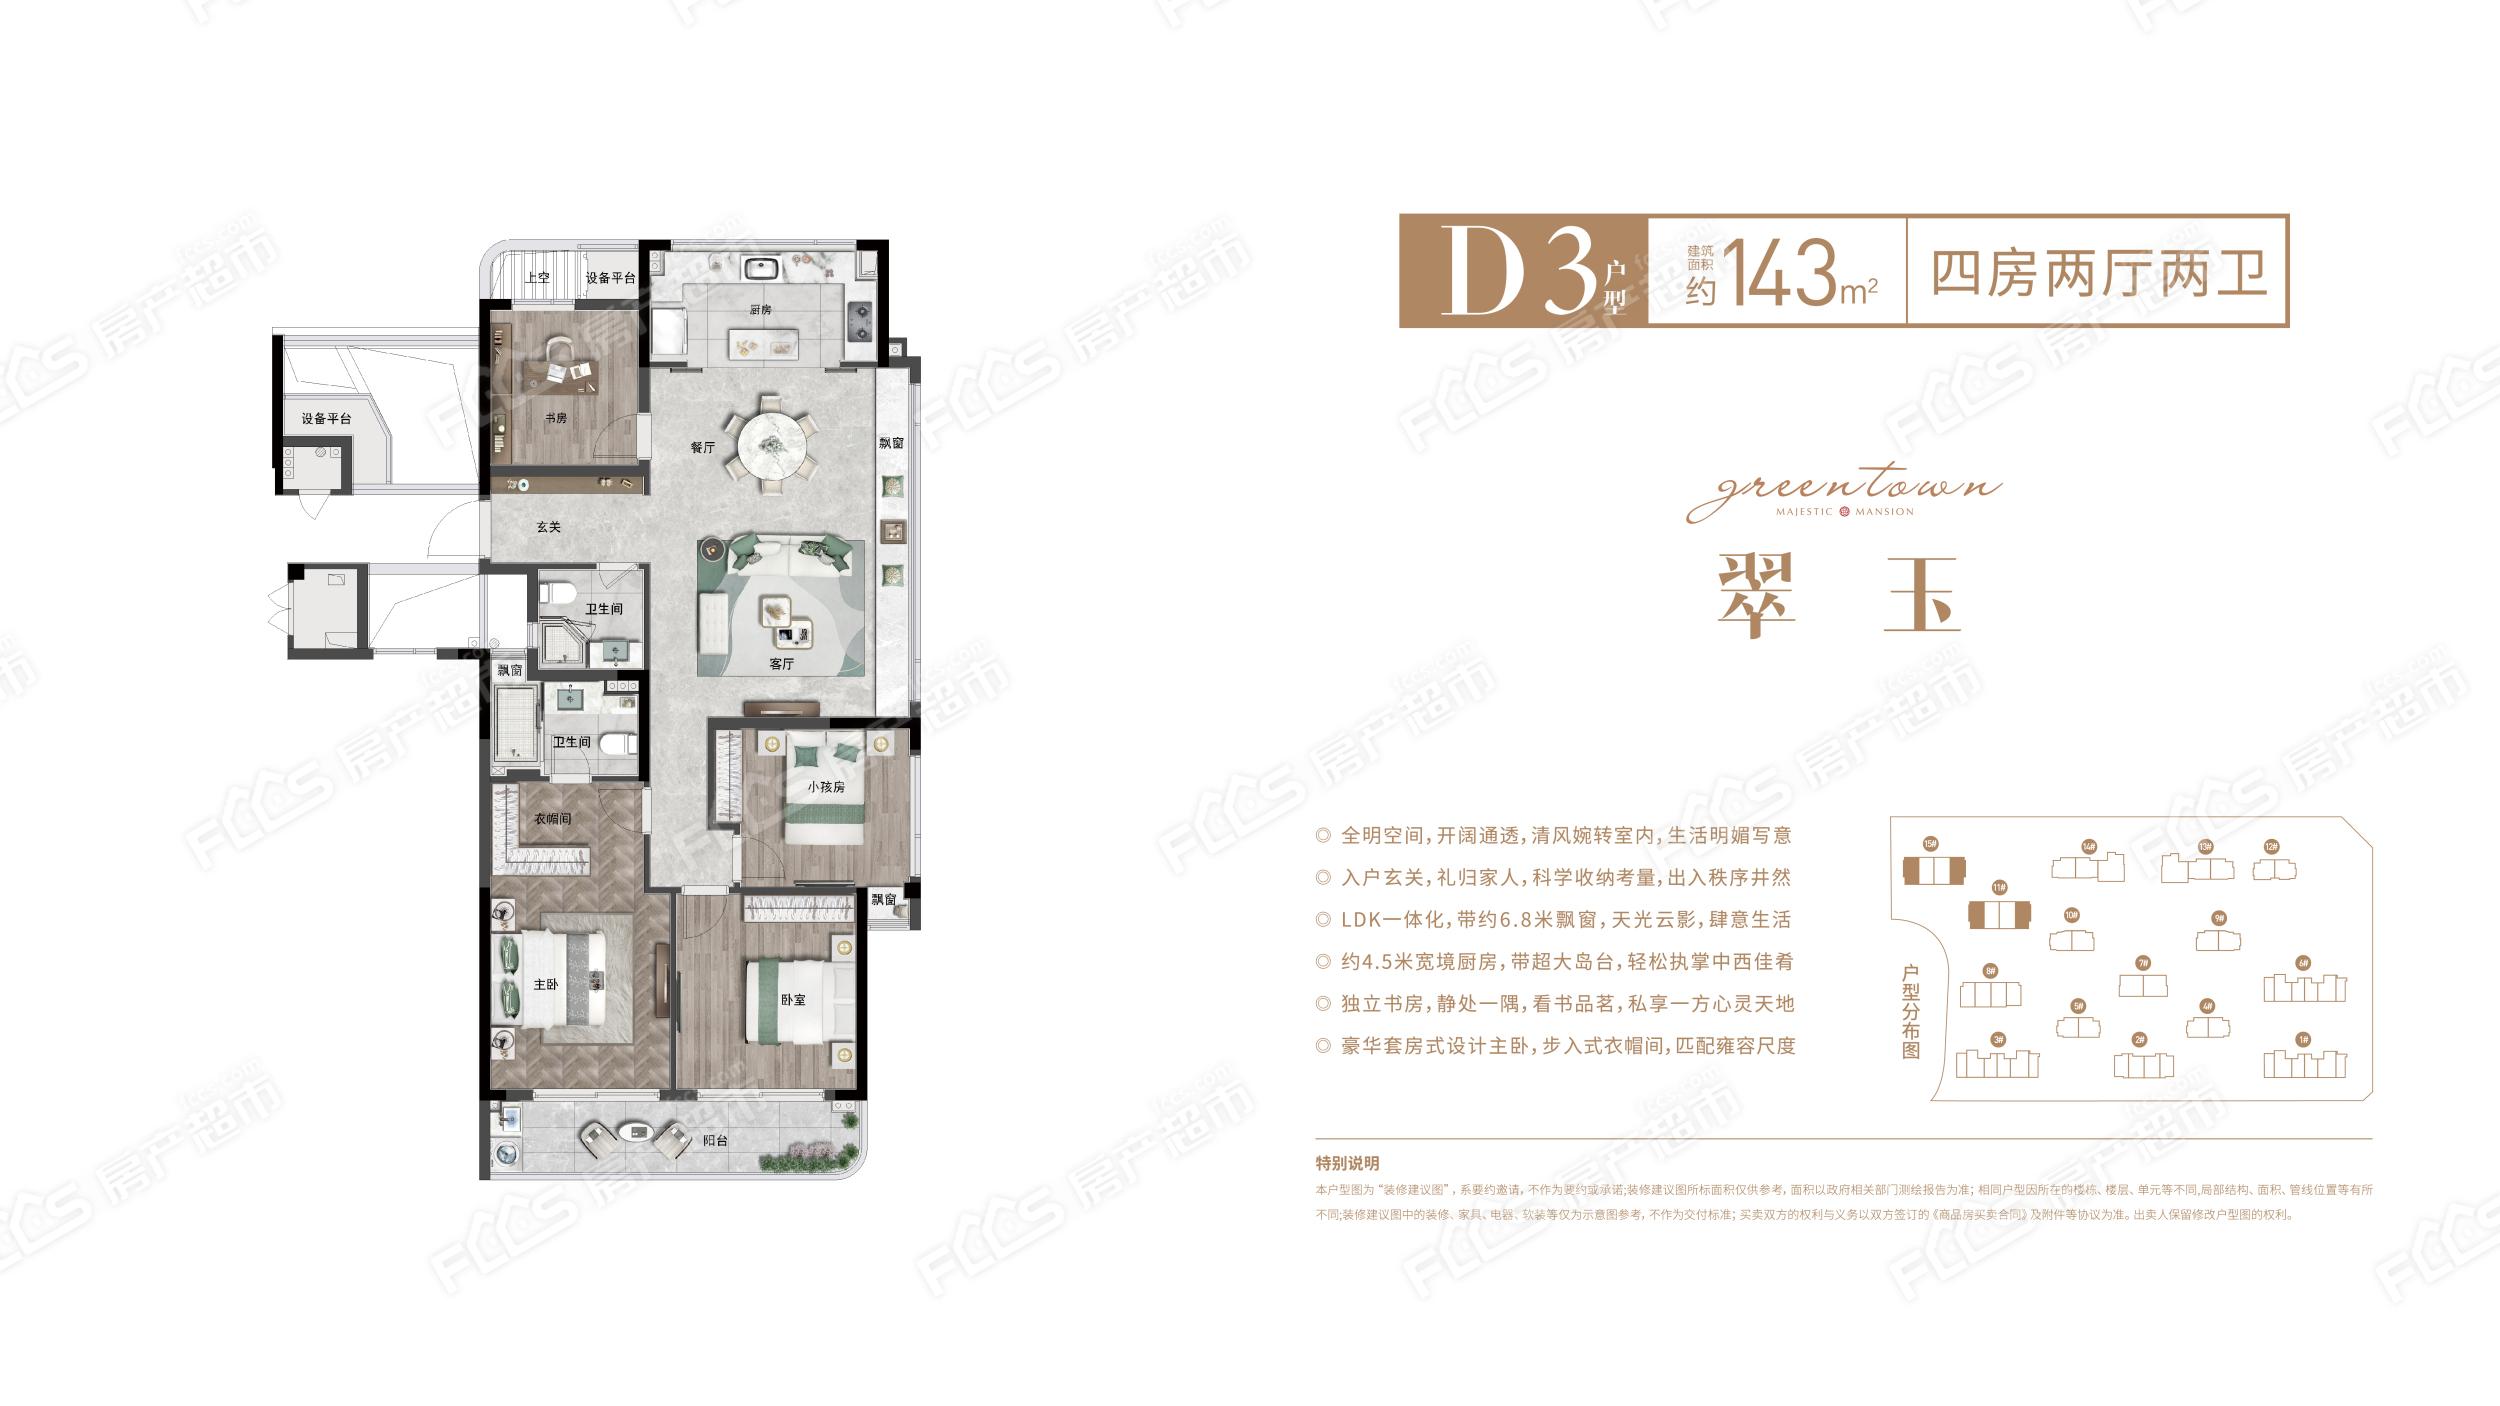 绿城锦玉园d3户型143平米4室2厅2卫1阳台户型图,户型设计图大全,户型